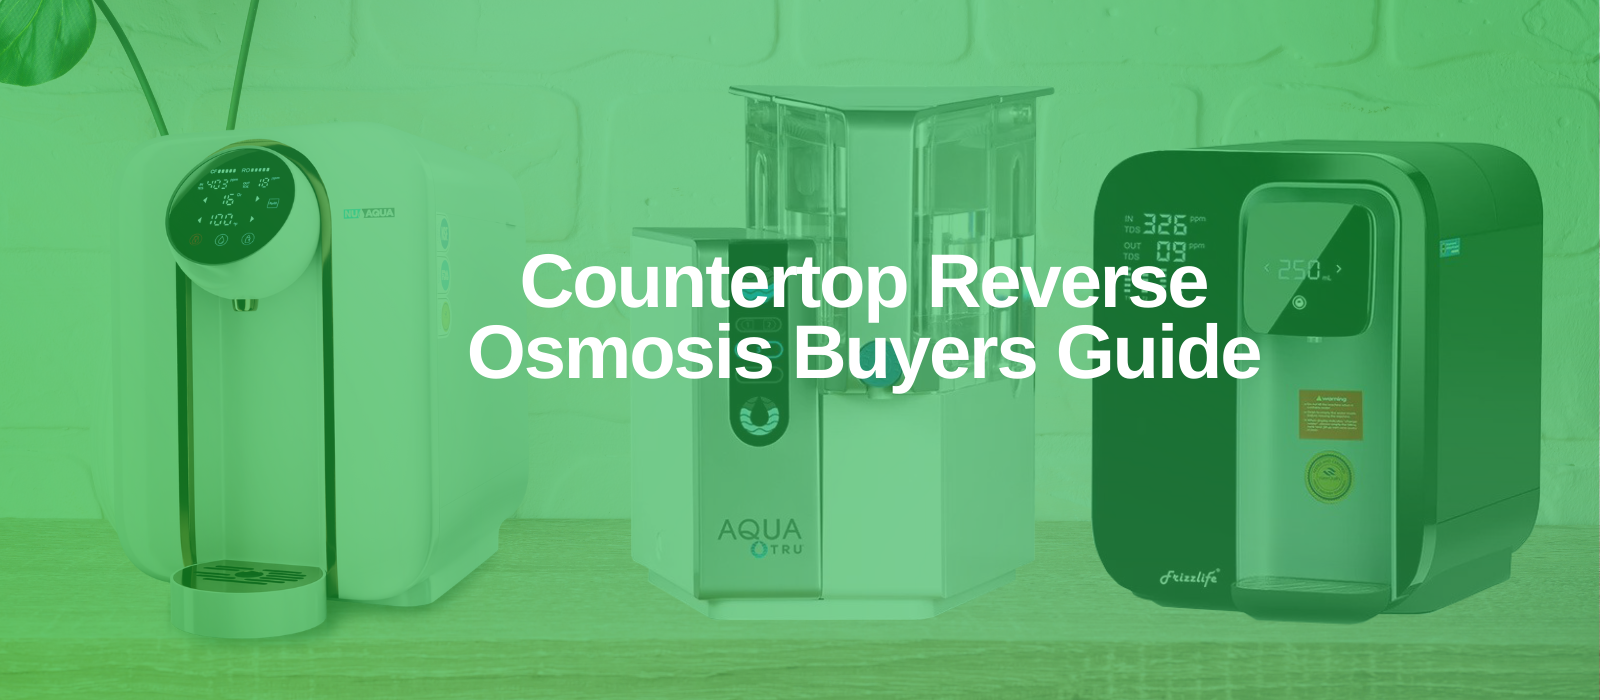 countertop reverse osmosis systems